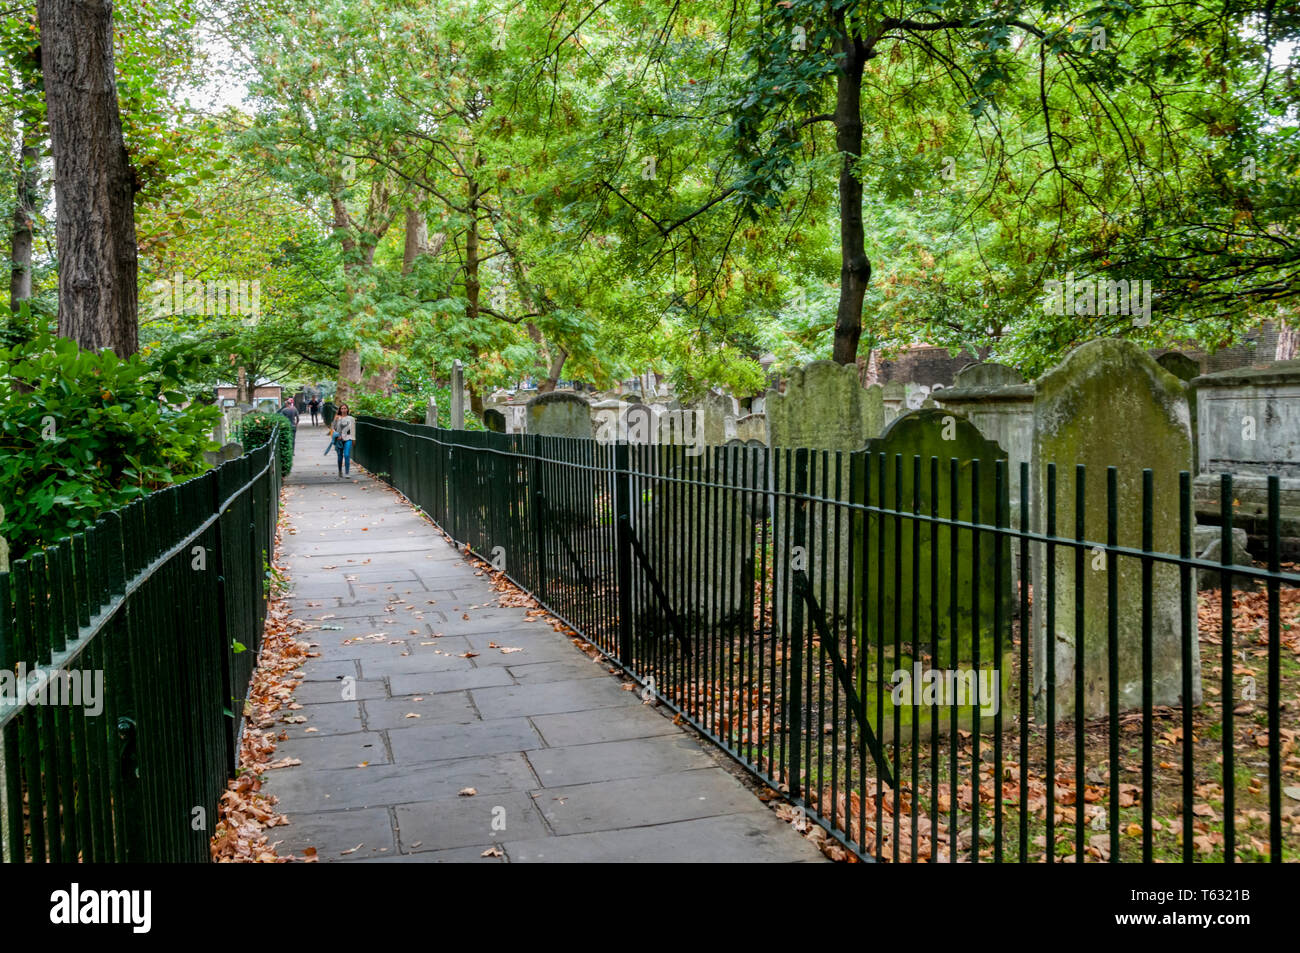 El antiguo cementerio de Verá Bunhill Fields en Islington, al norte de Londres, aparece el grado I en el registro histórico de parques y jardines. Foto de stock